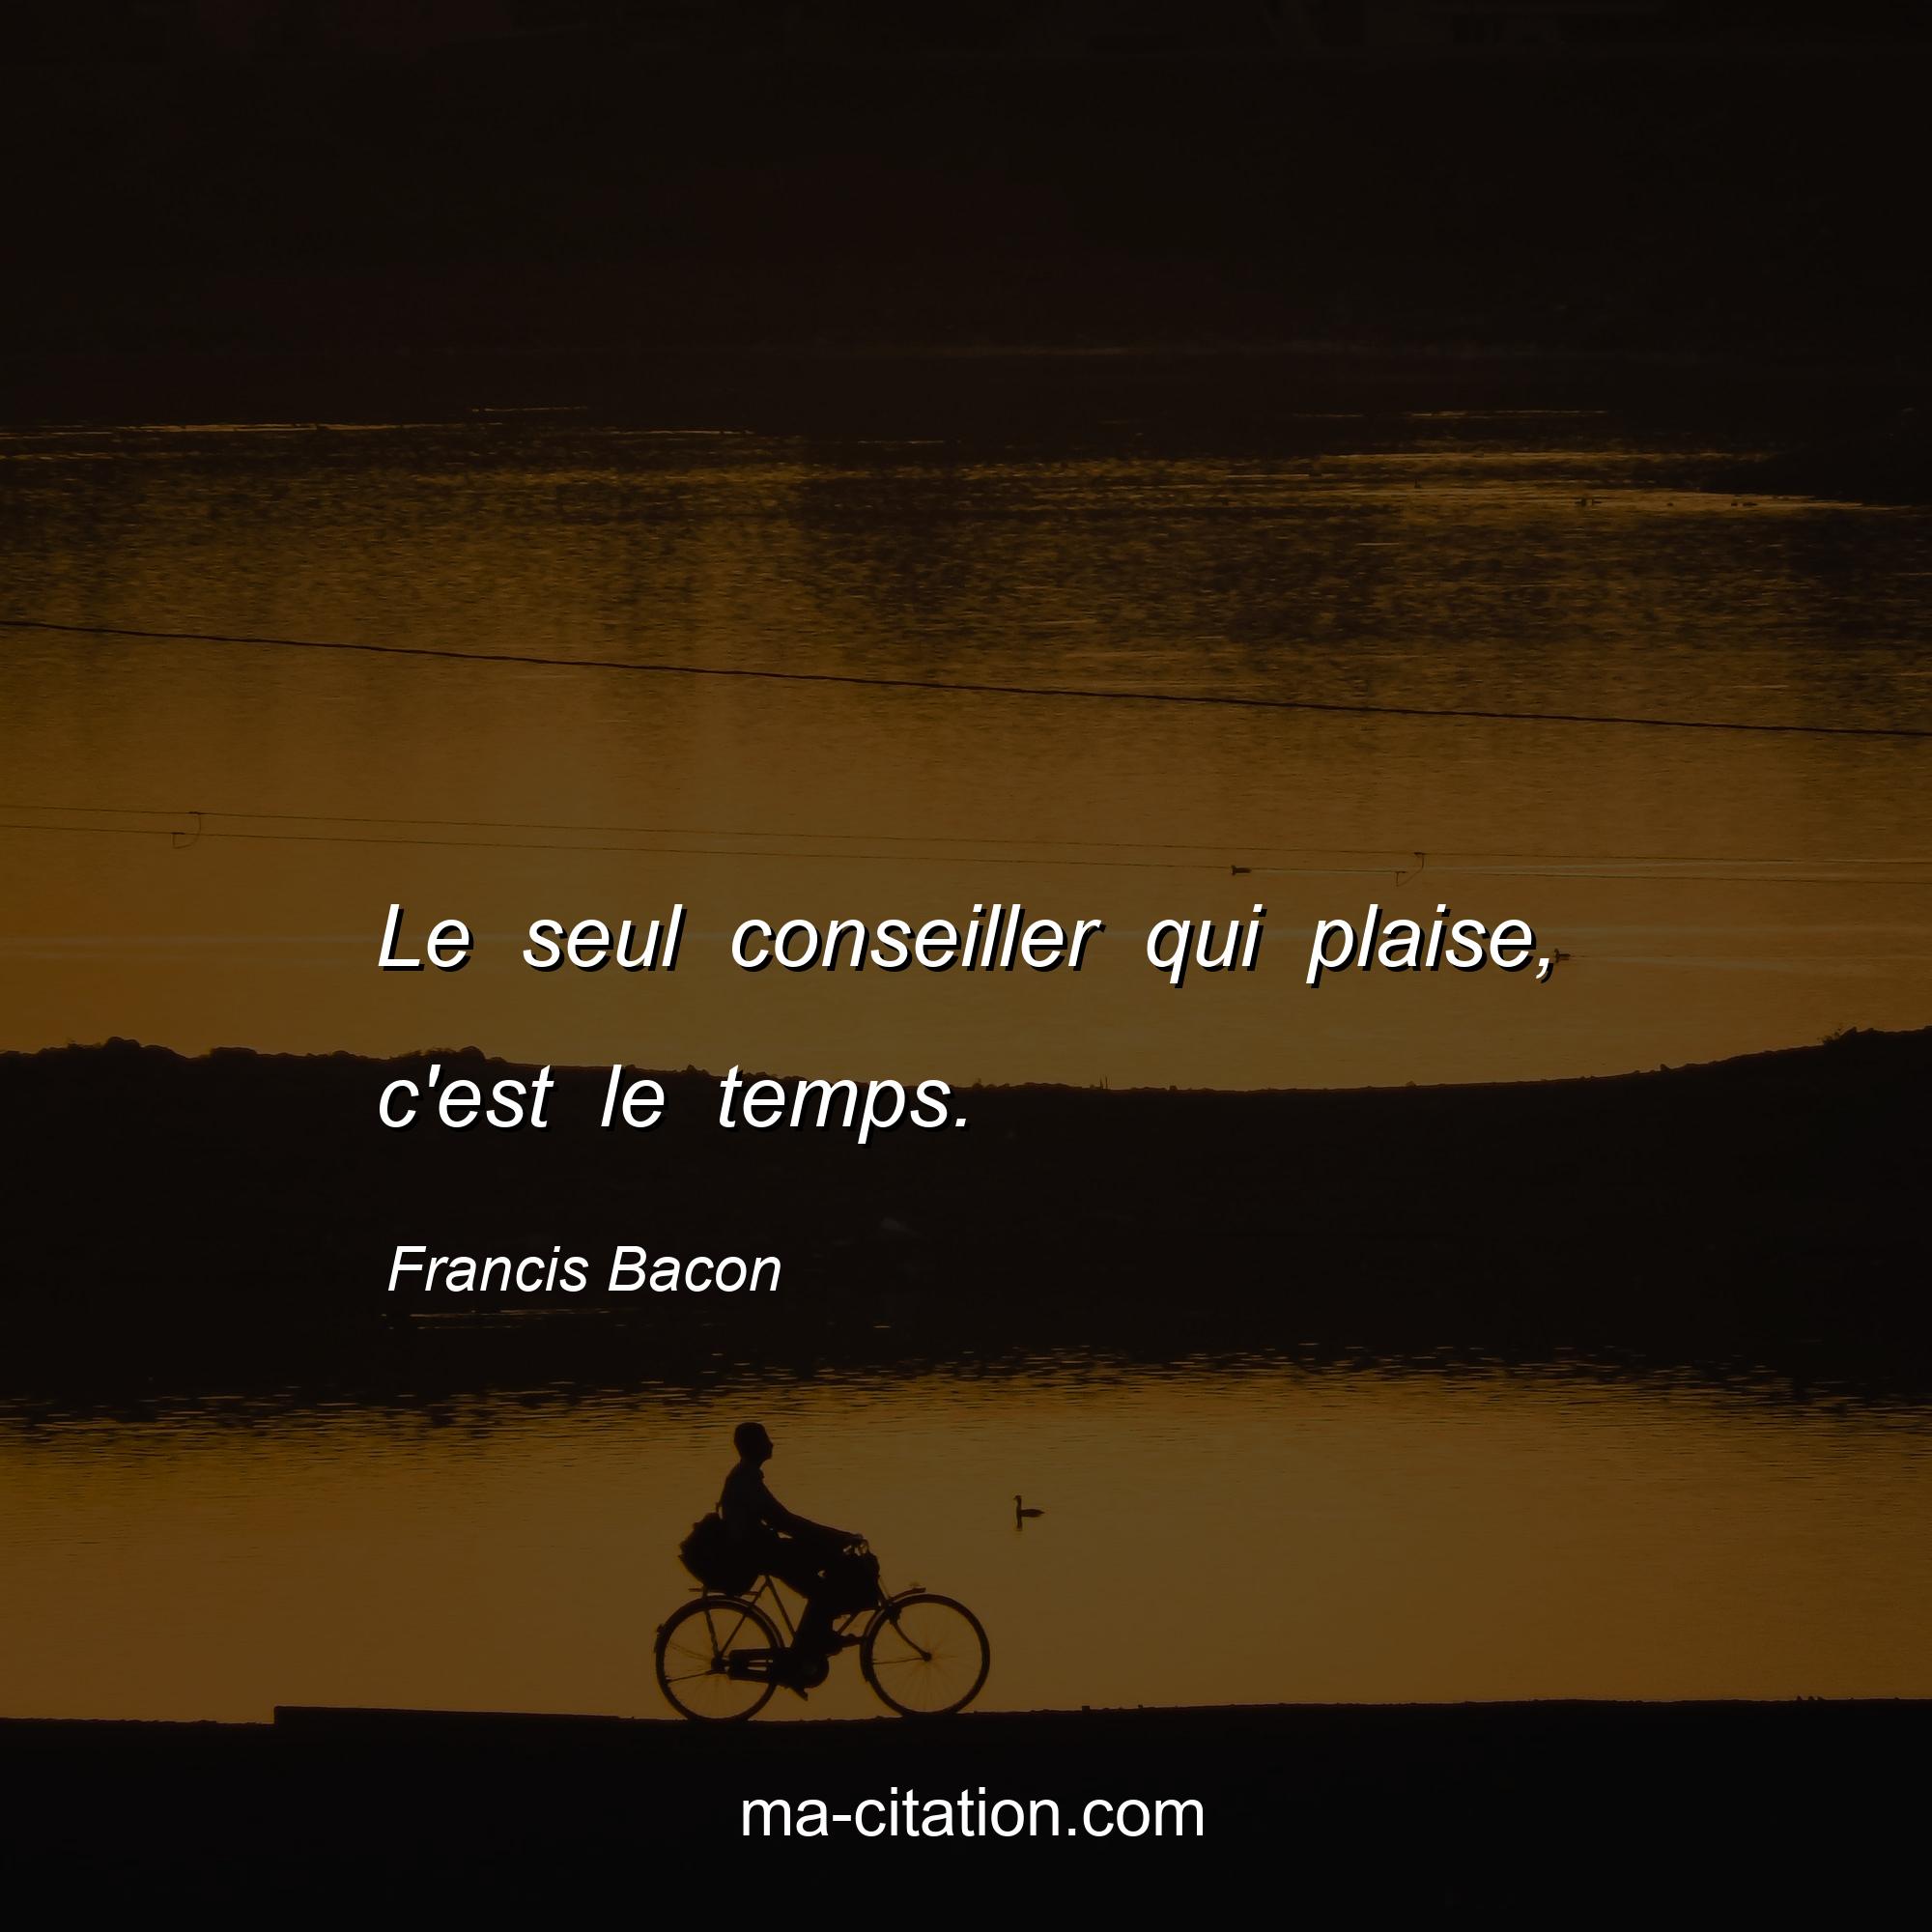 Francis Bacon : Le seul conseiller qui plaise, c'est le temps.